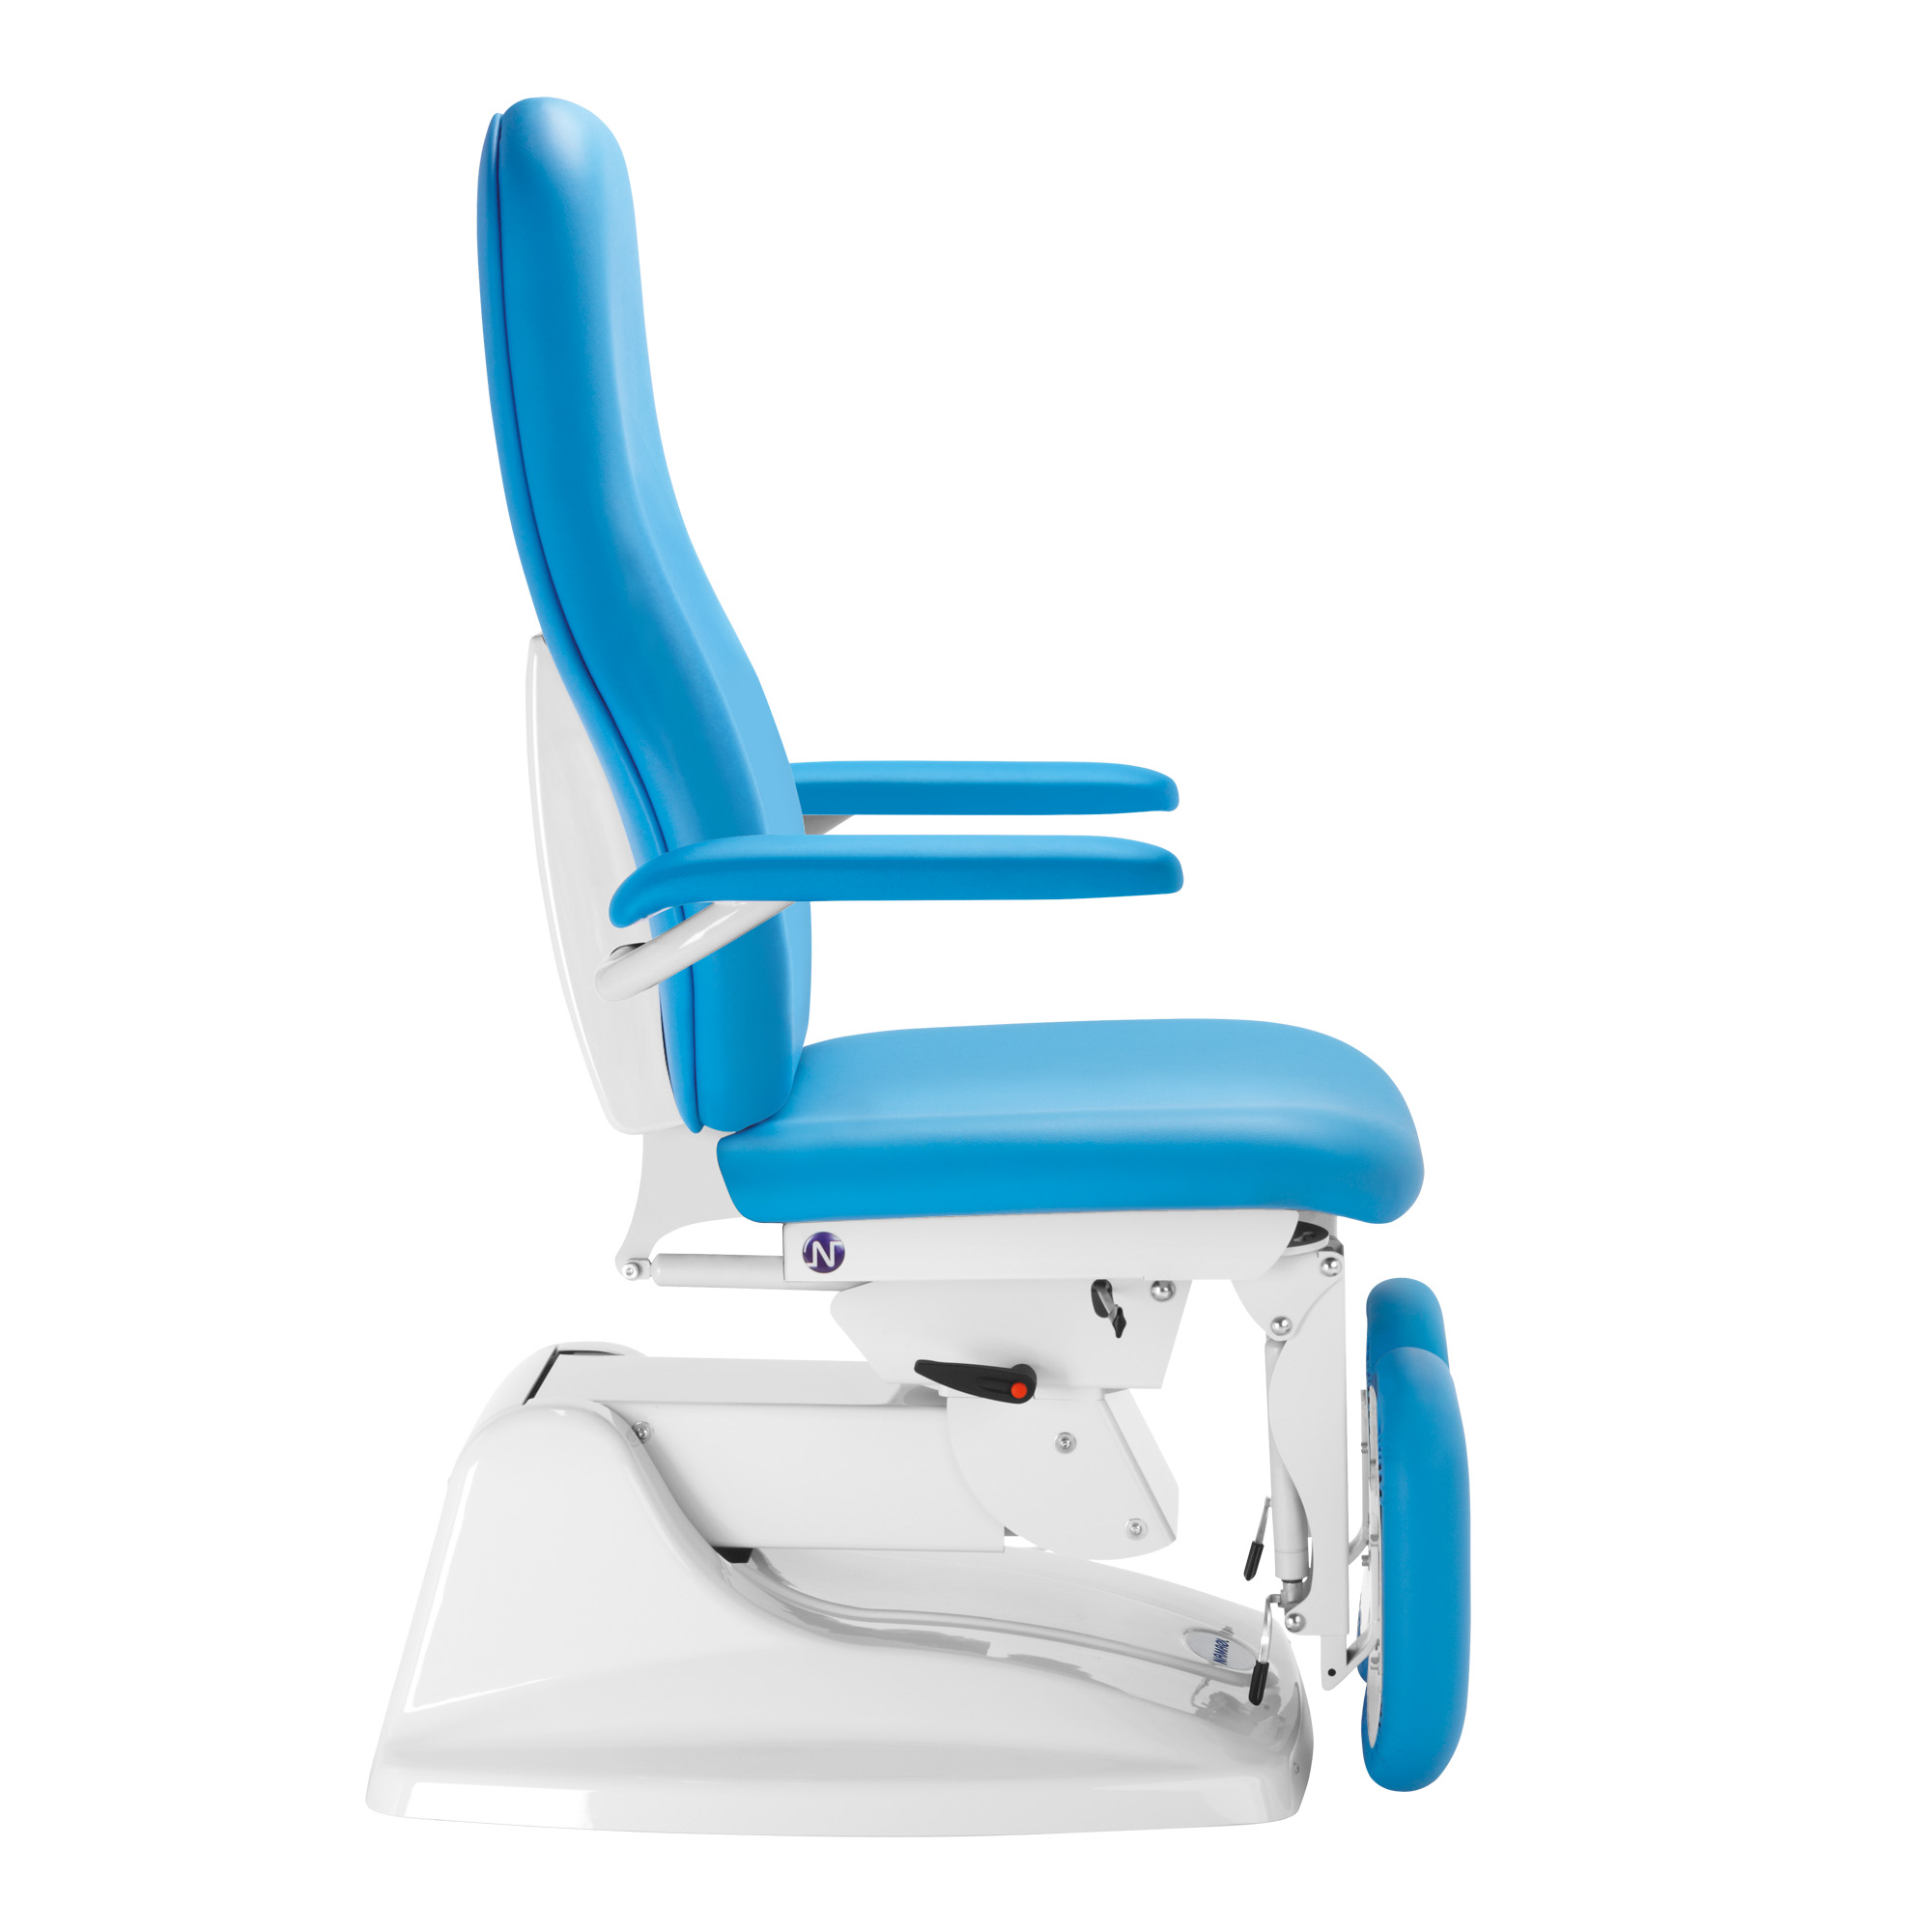 Penta 1-motoriger elektrischer Fußpflege-Stuhl mit Fußschalter